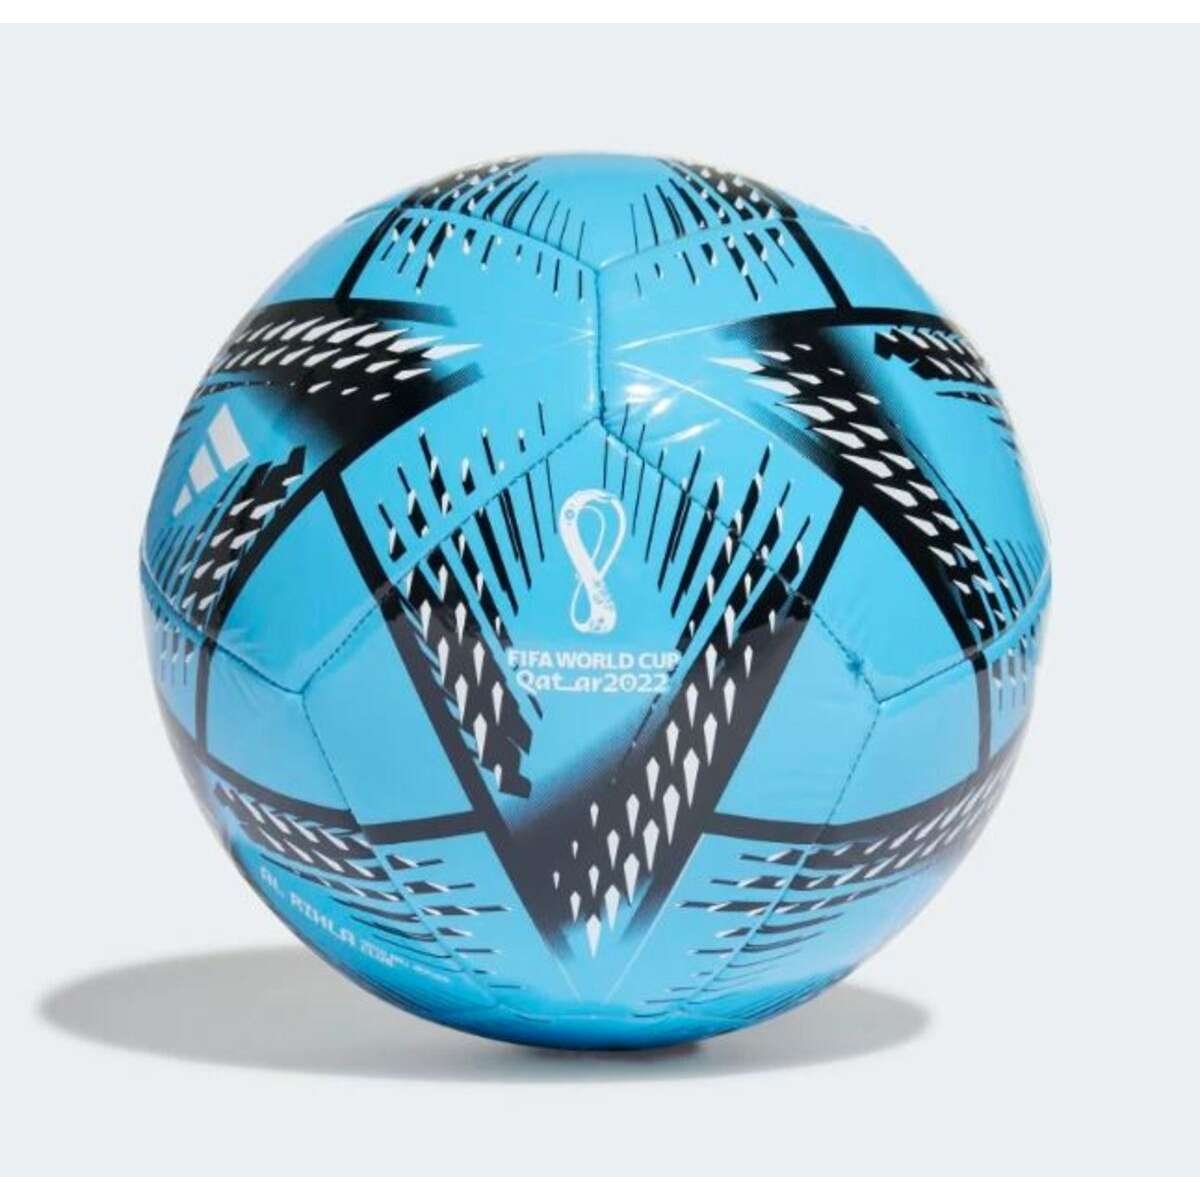 Balón al Rihla Club Copa Mundial Qatar 2022 Adidas